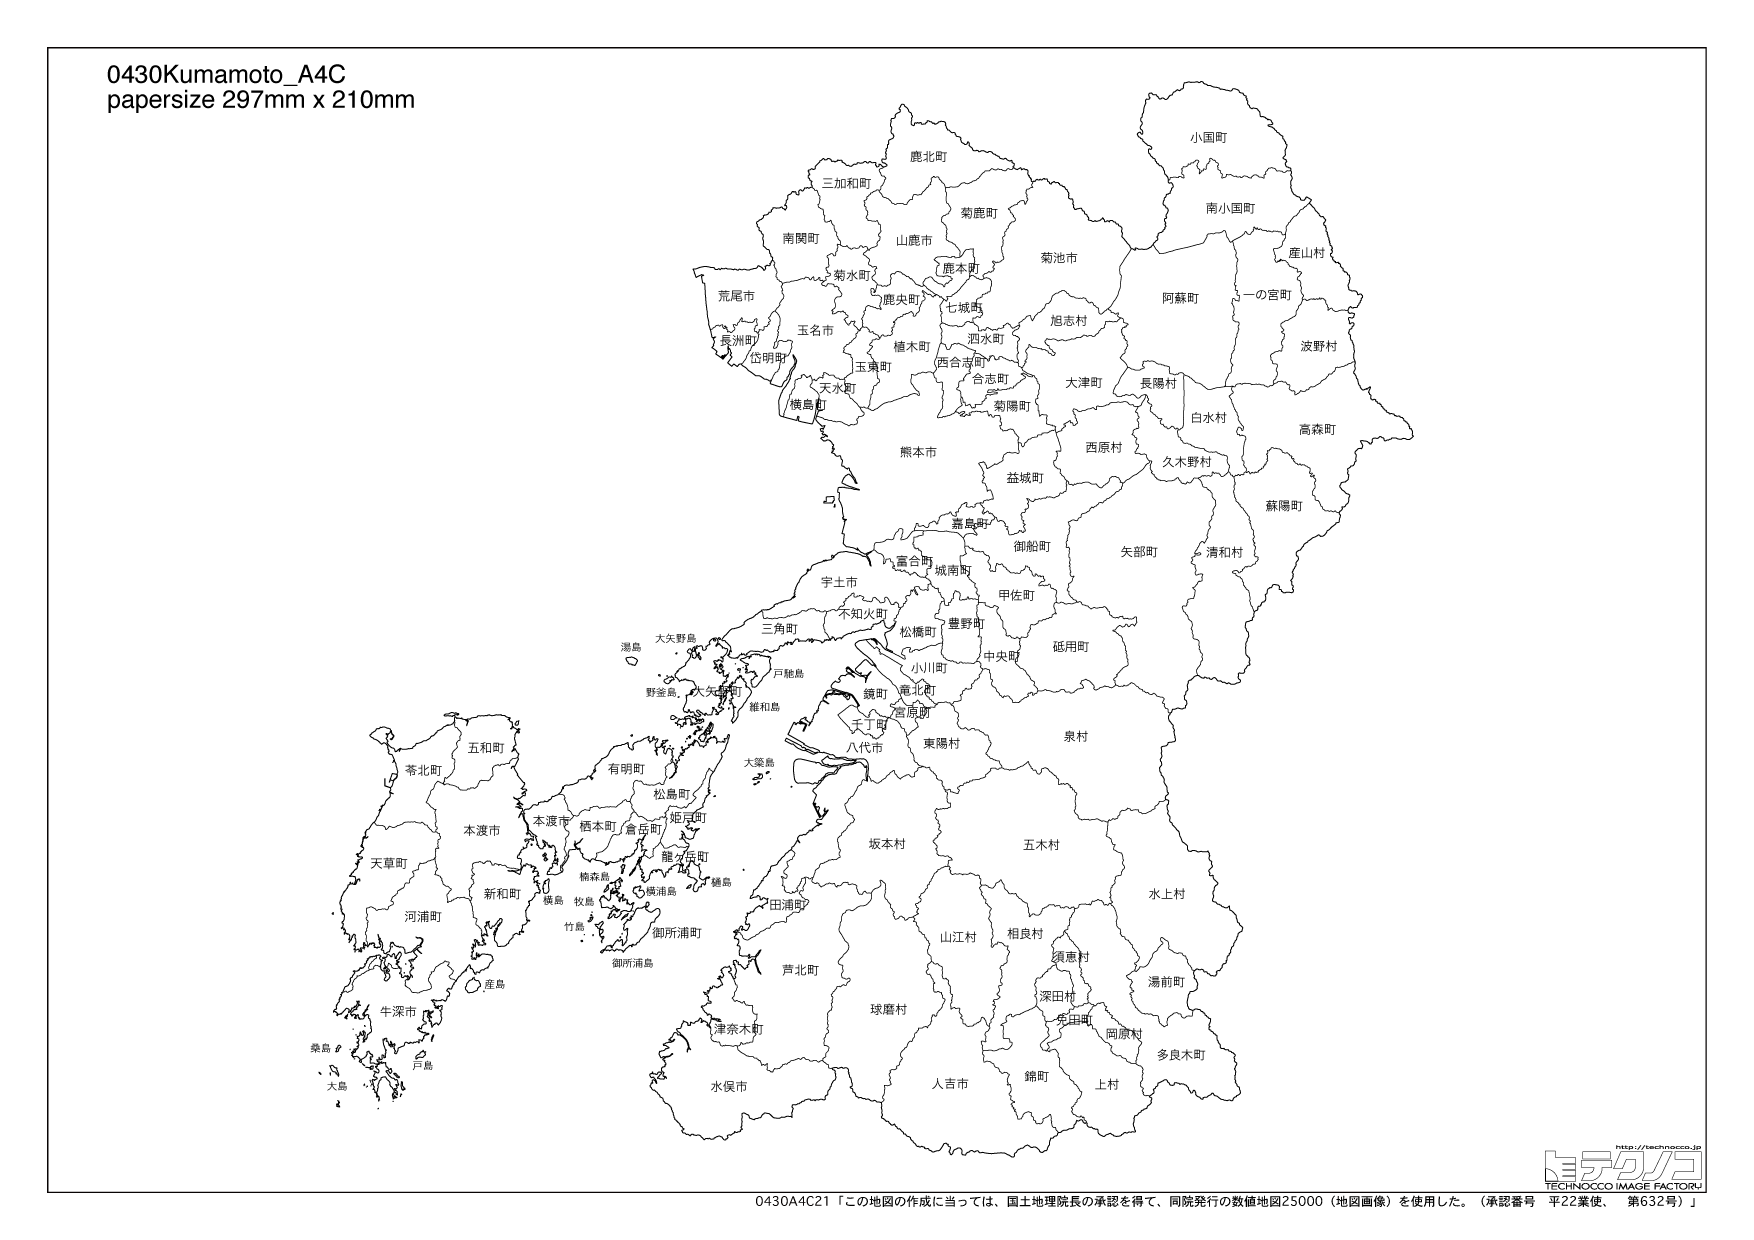 熊本県の白地図と市町村の合併情報